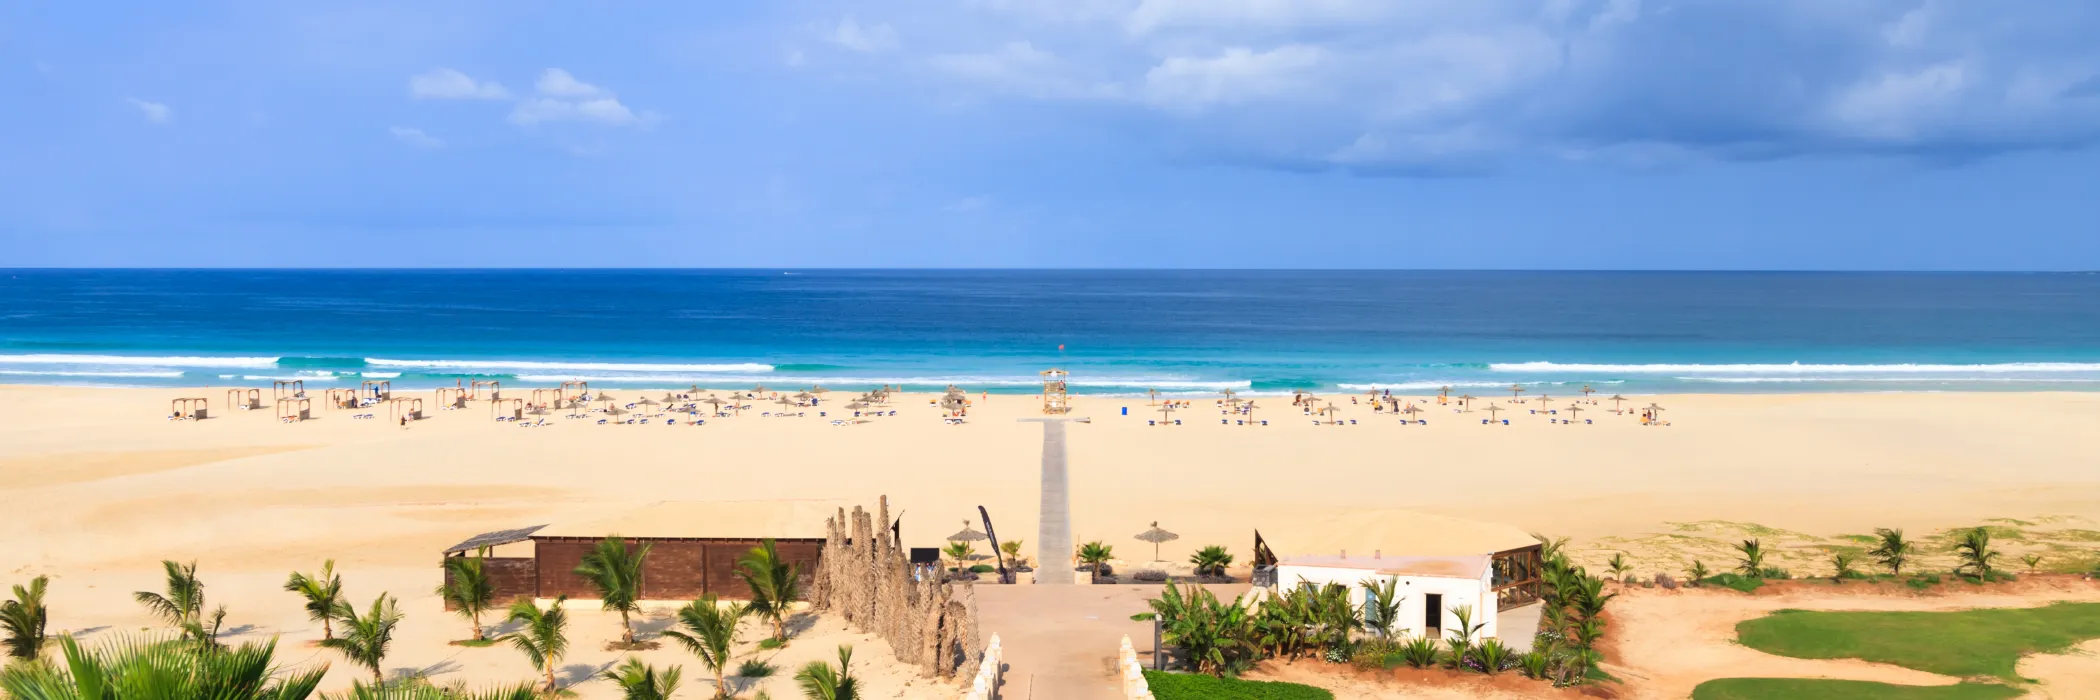 Cape Verde Holidays - Boa Vista Beach